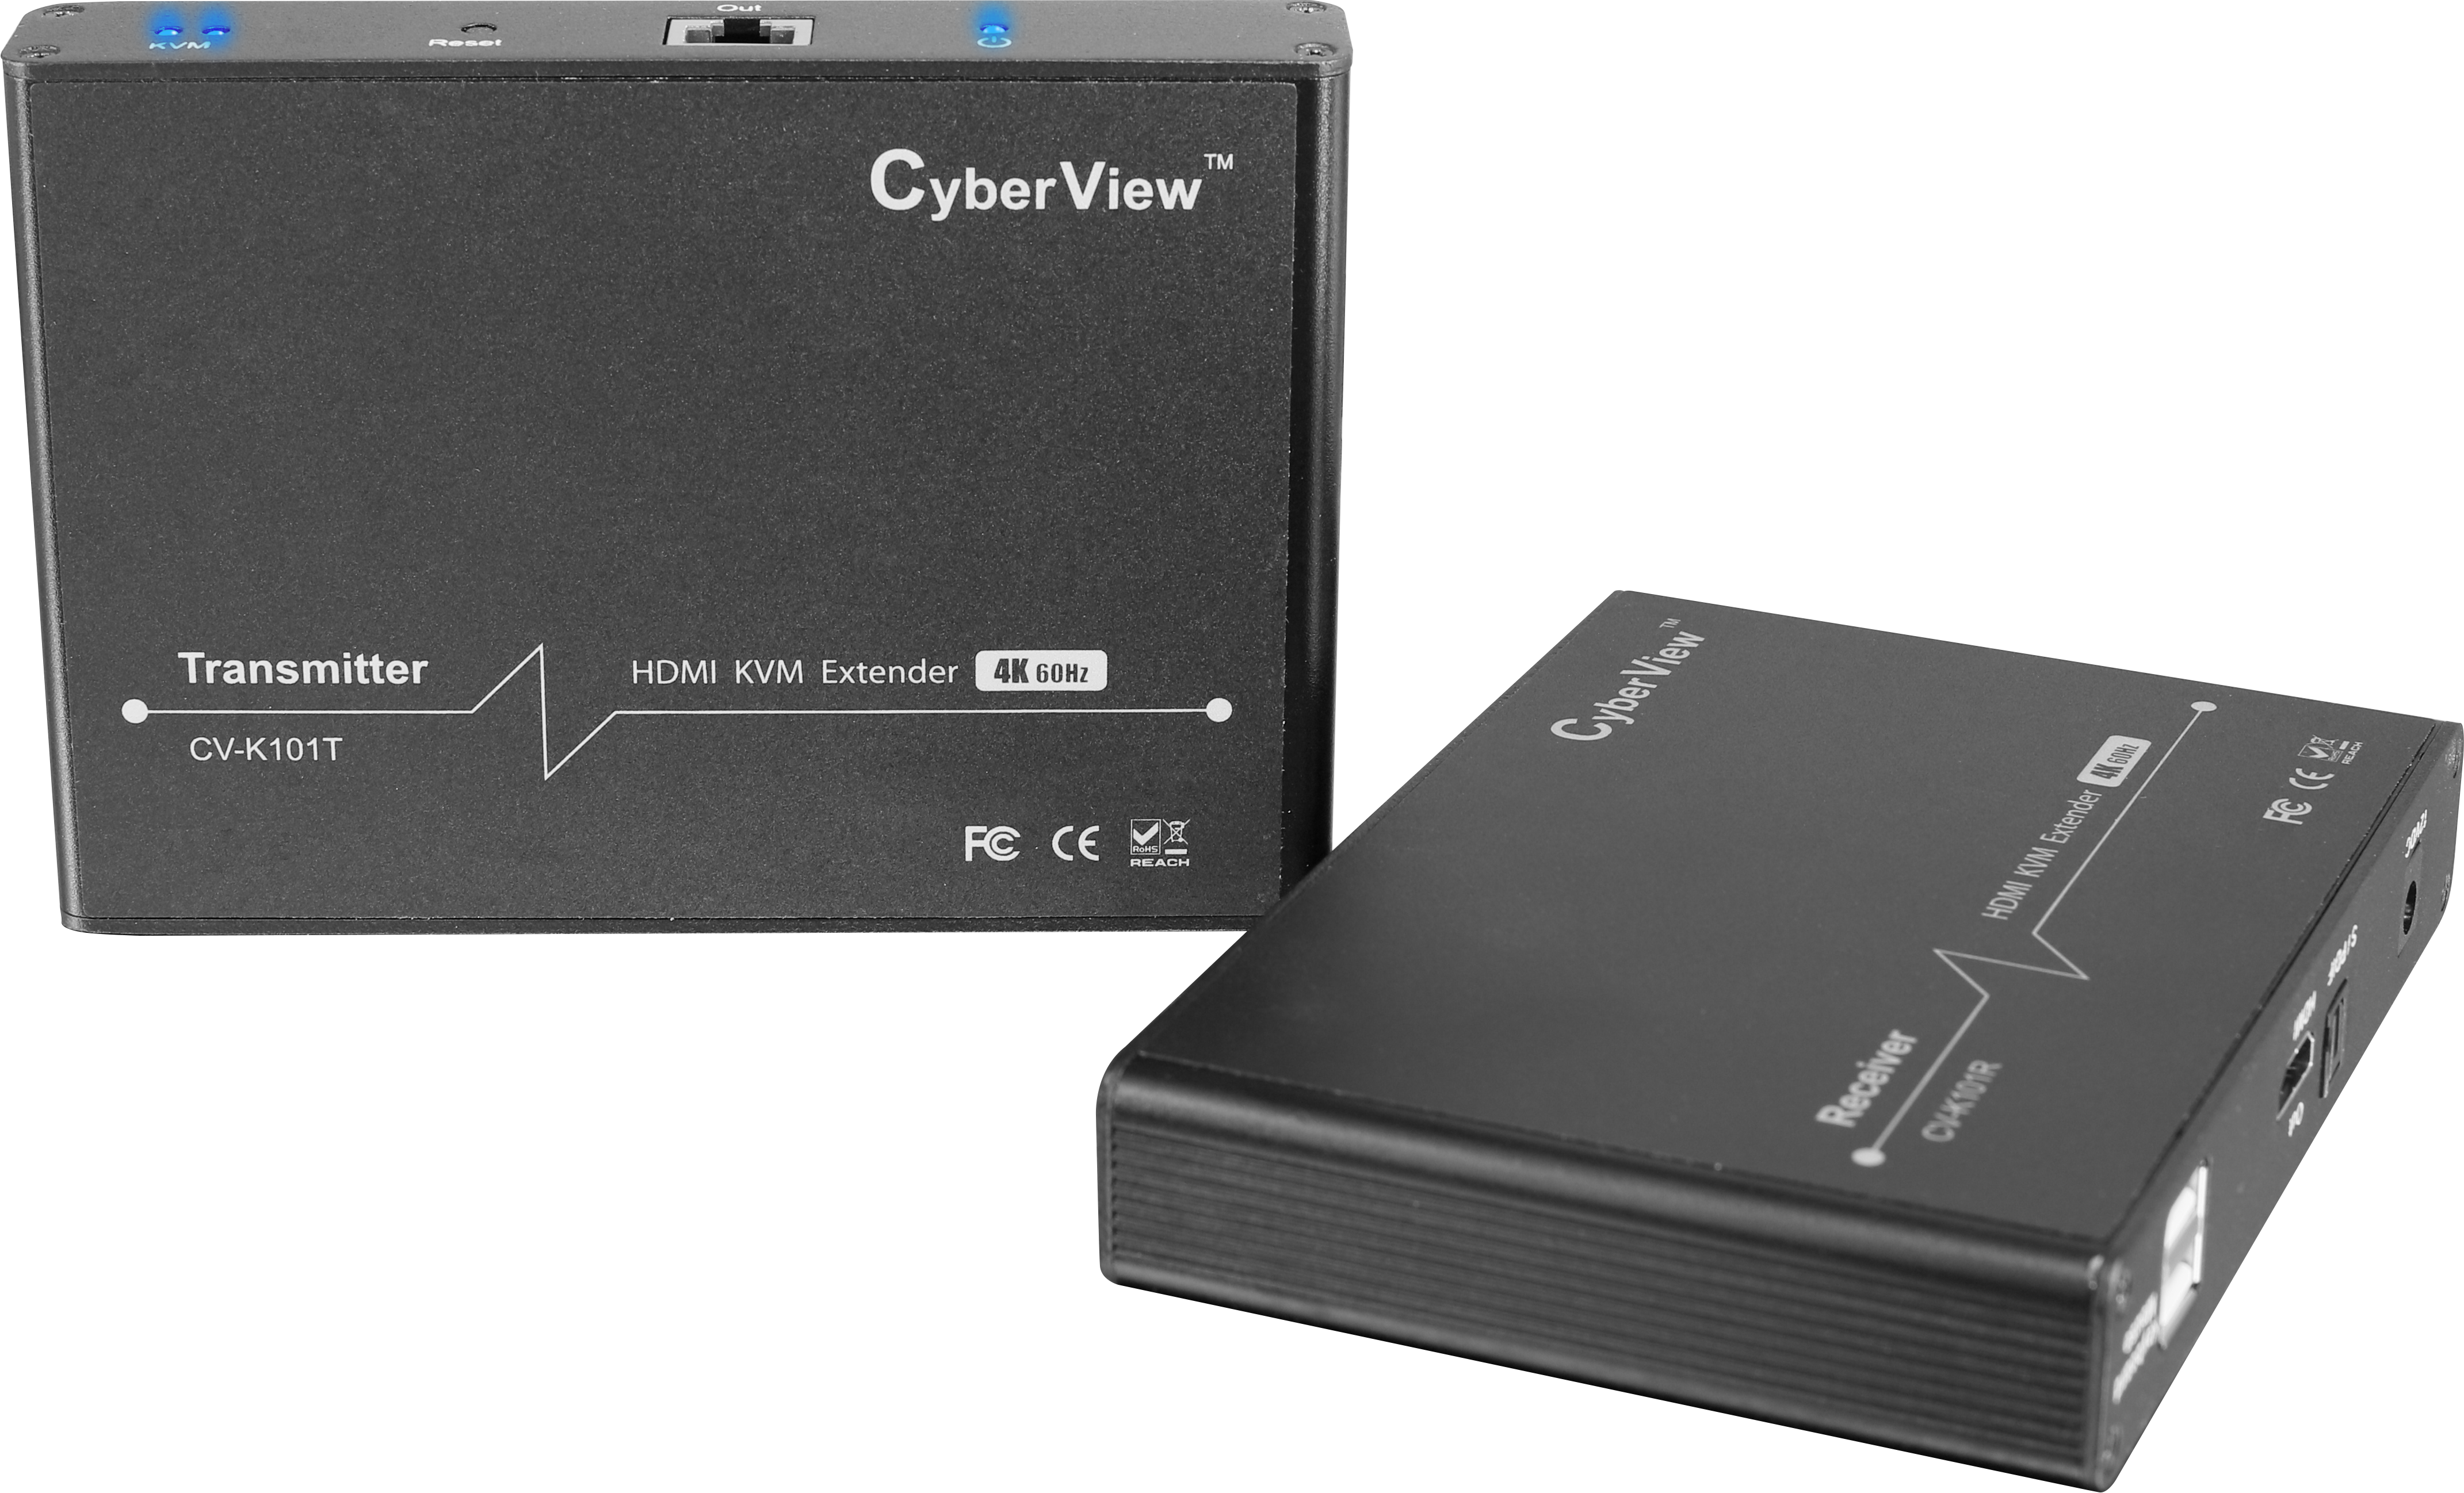 CV-K101 - CyberView 4K HDMI KVM Extender